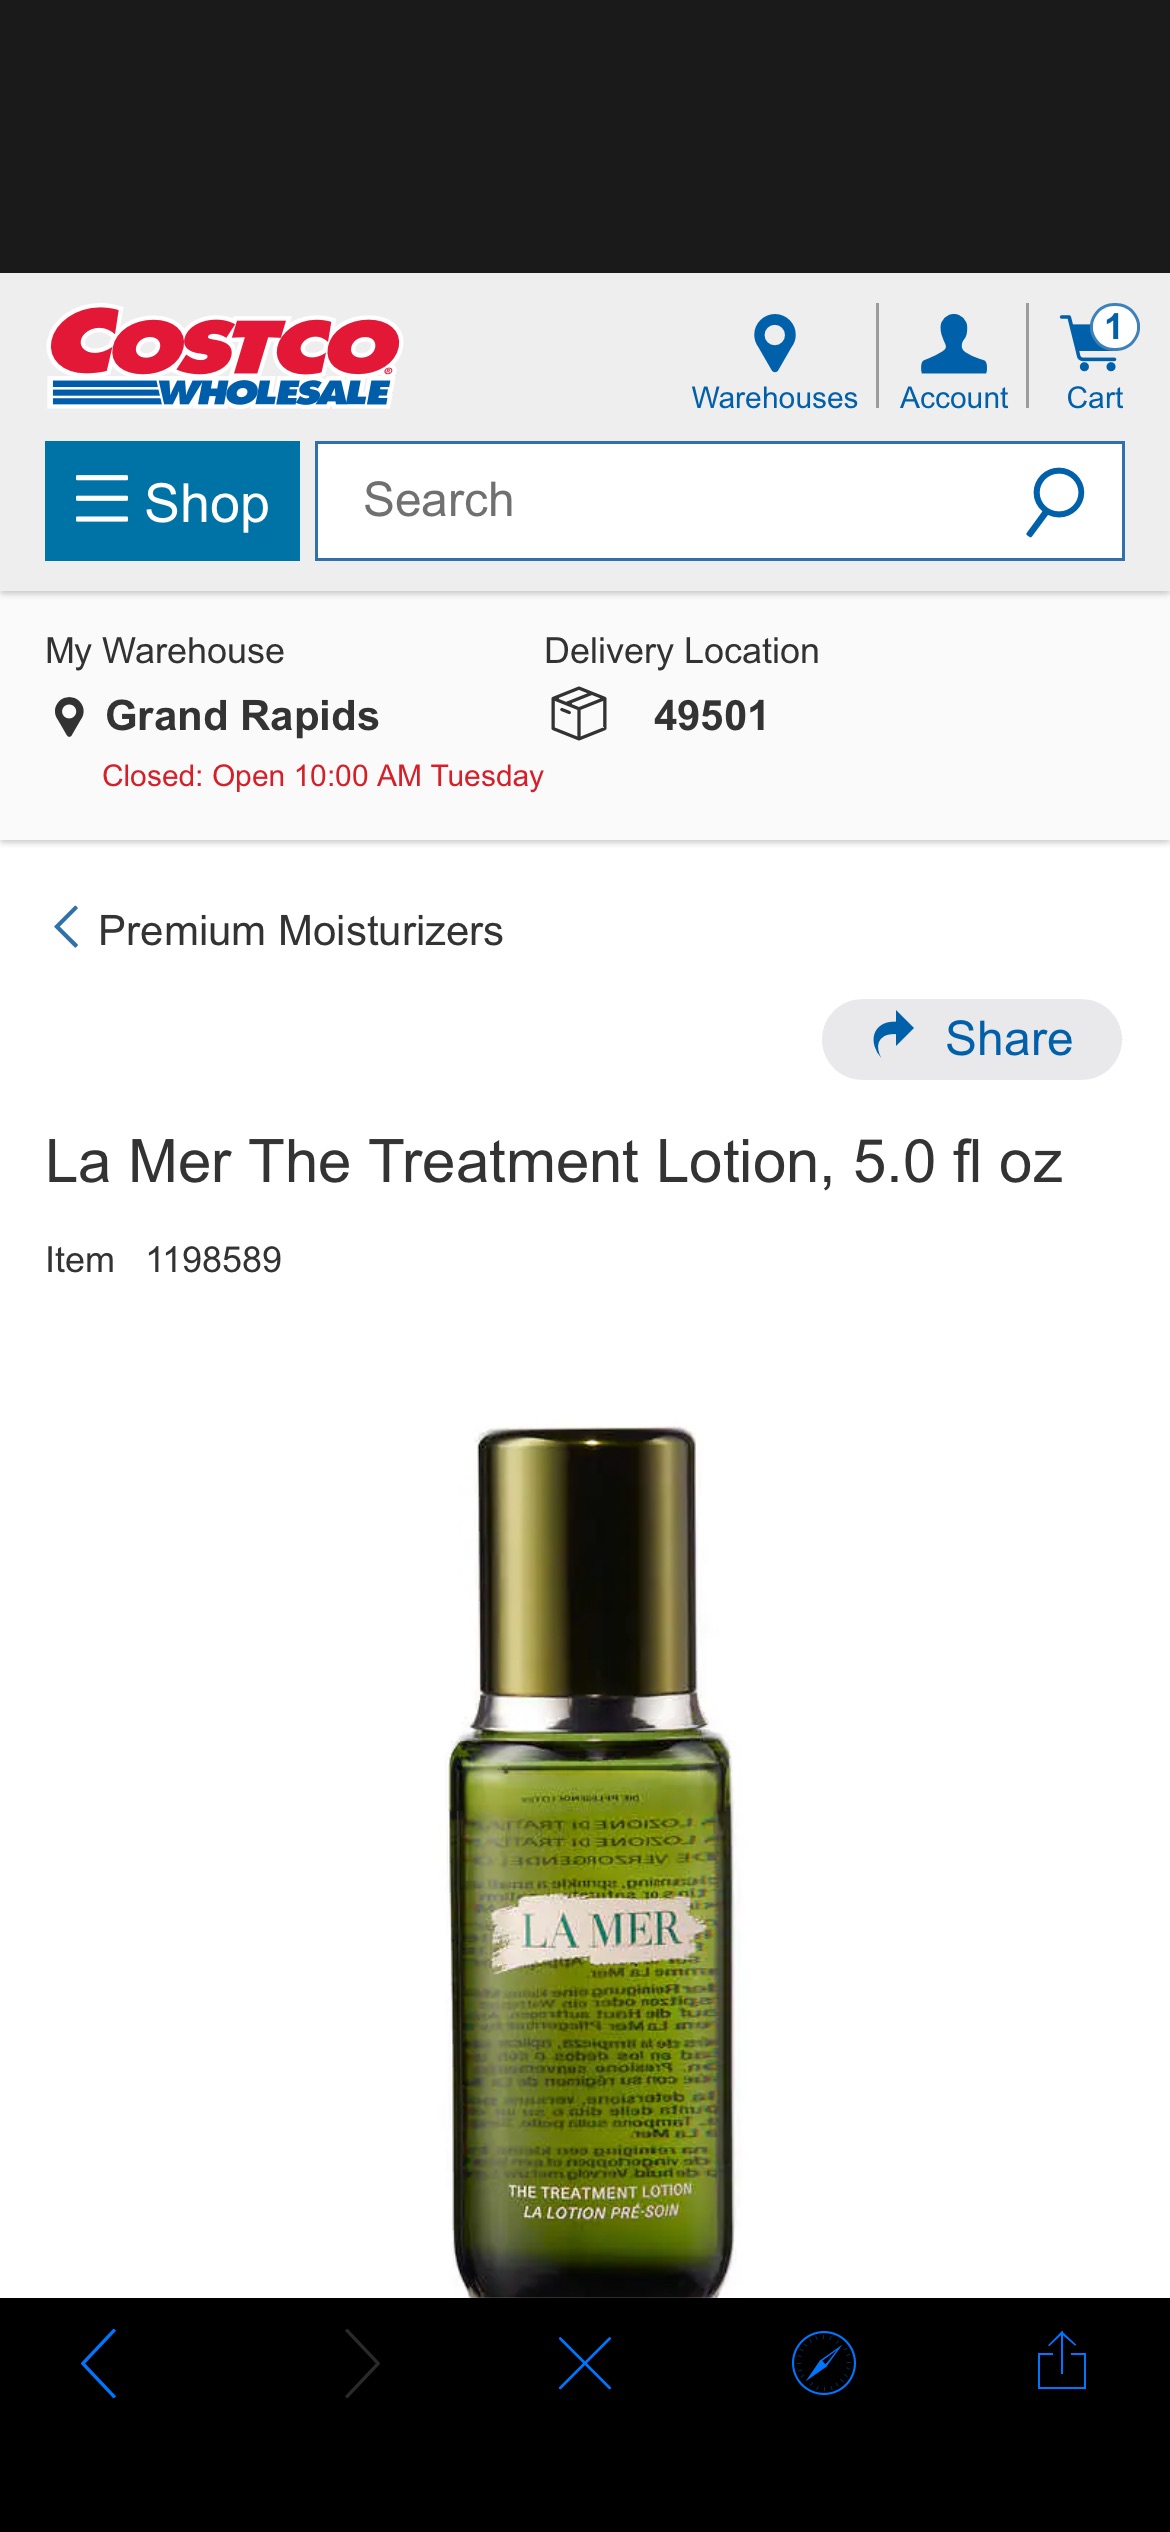 La Mer The Treatment Lotion, 5.0 fl oz | Costco